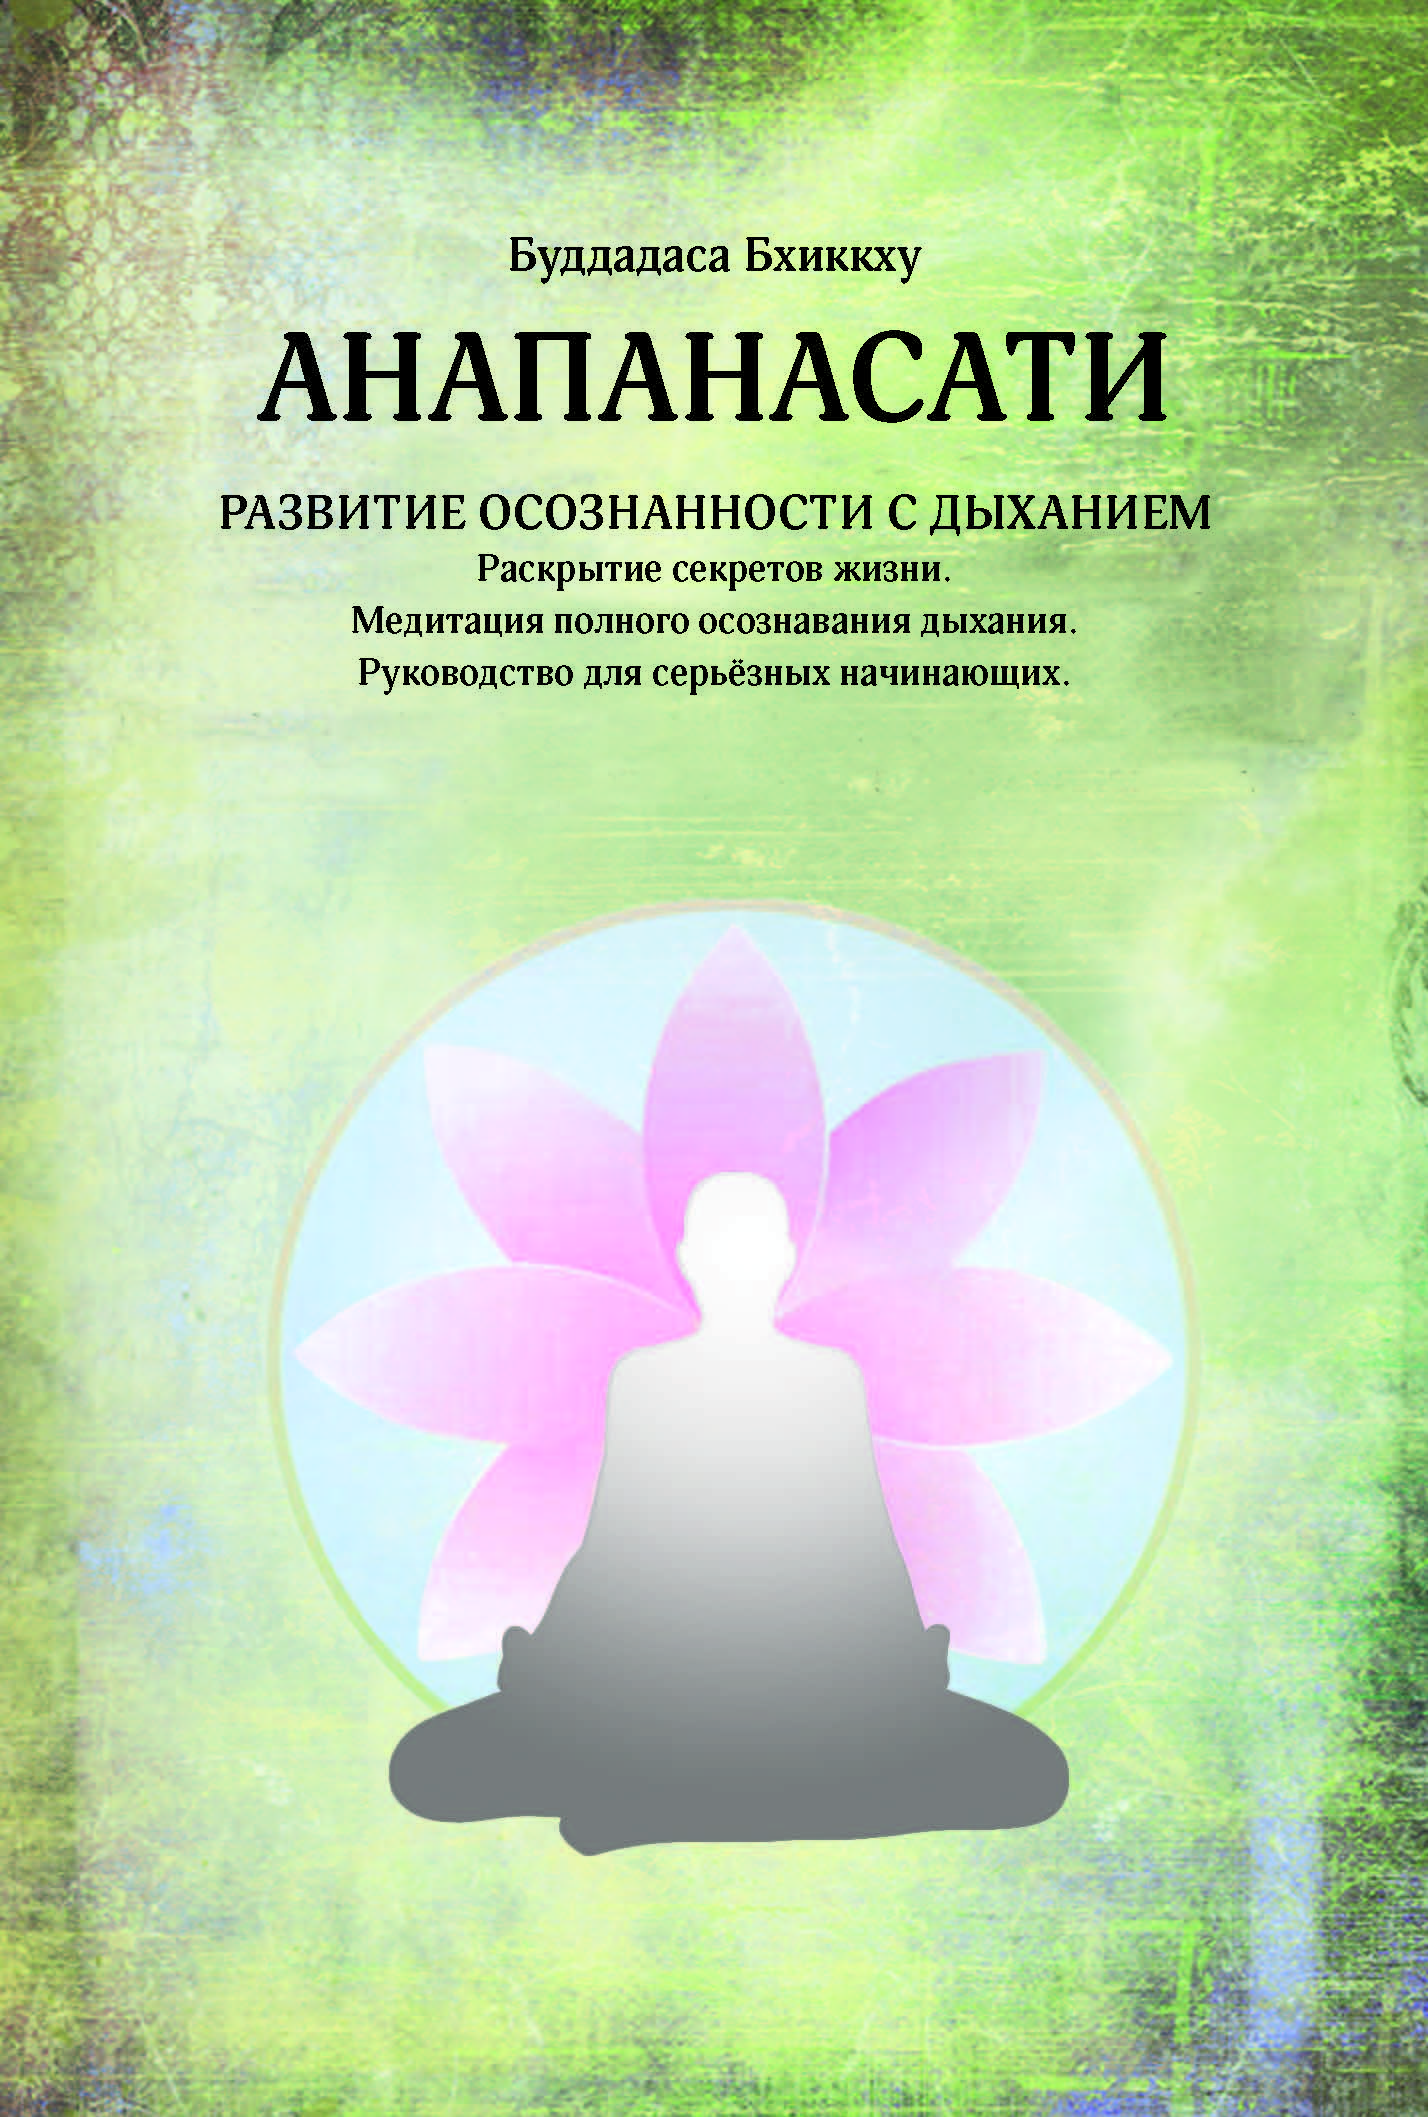 20190912 rus anapanasati second edition cover